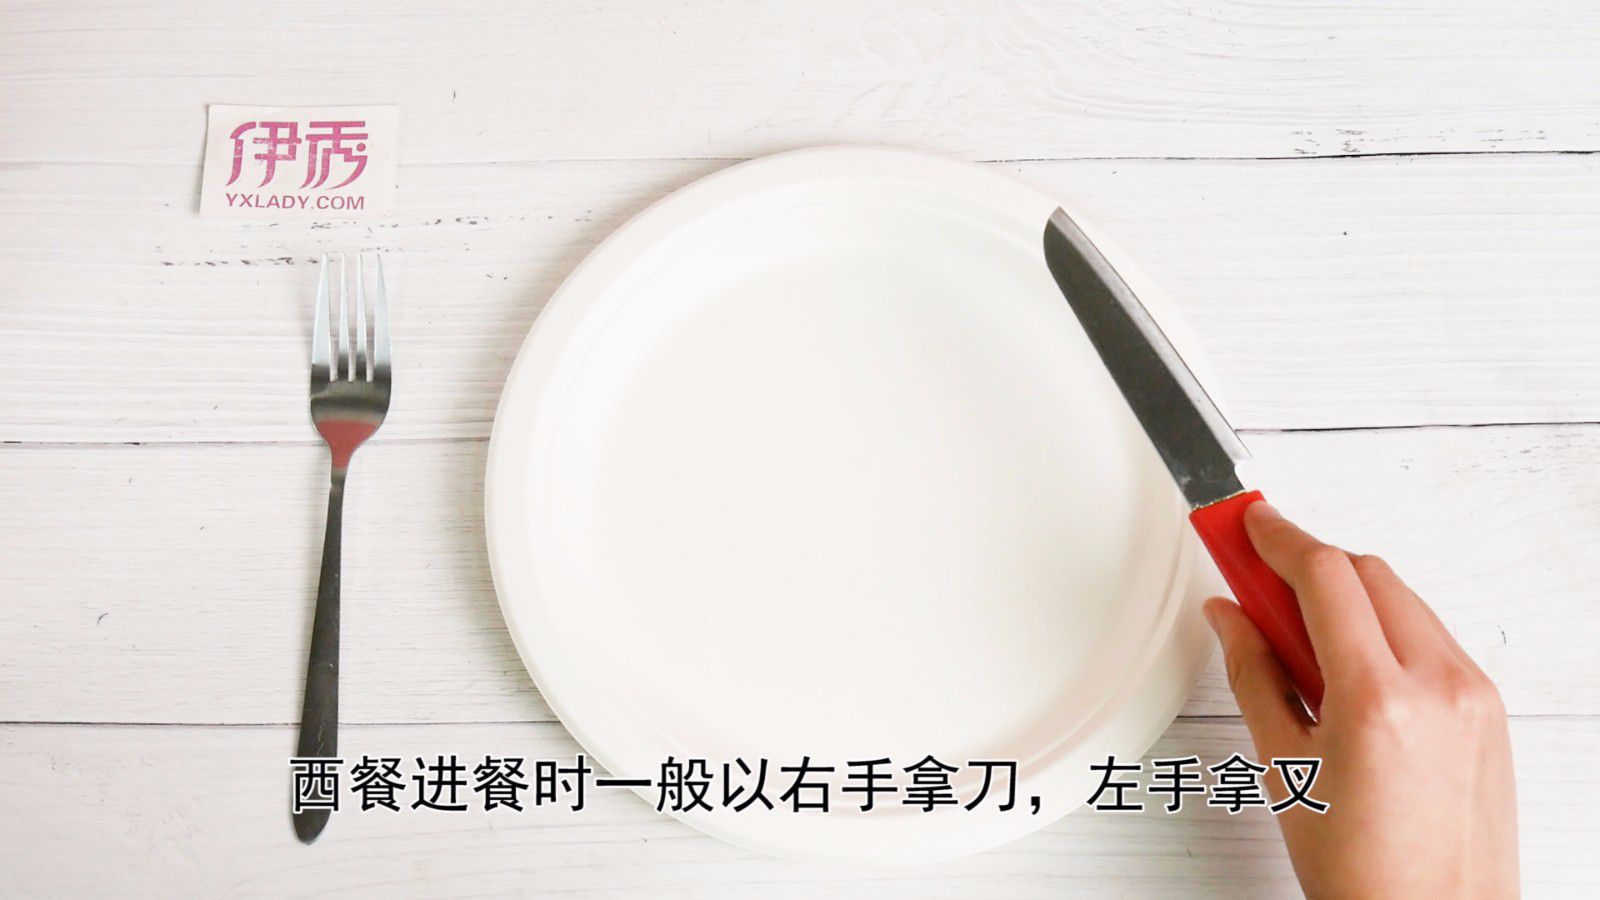 吃西餐刀叉怎么拿 学会正确用法让您更优雅